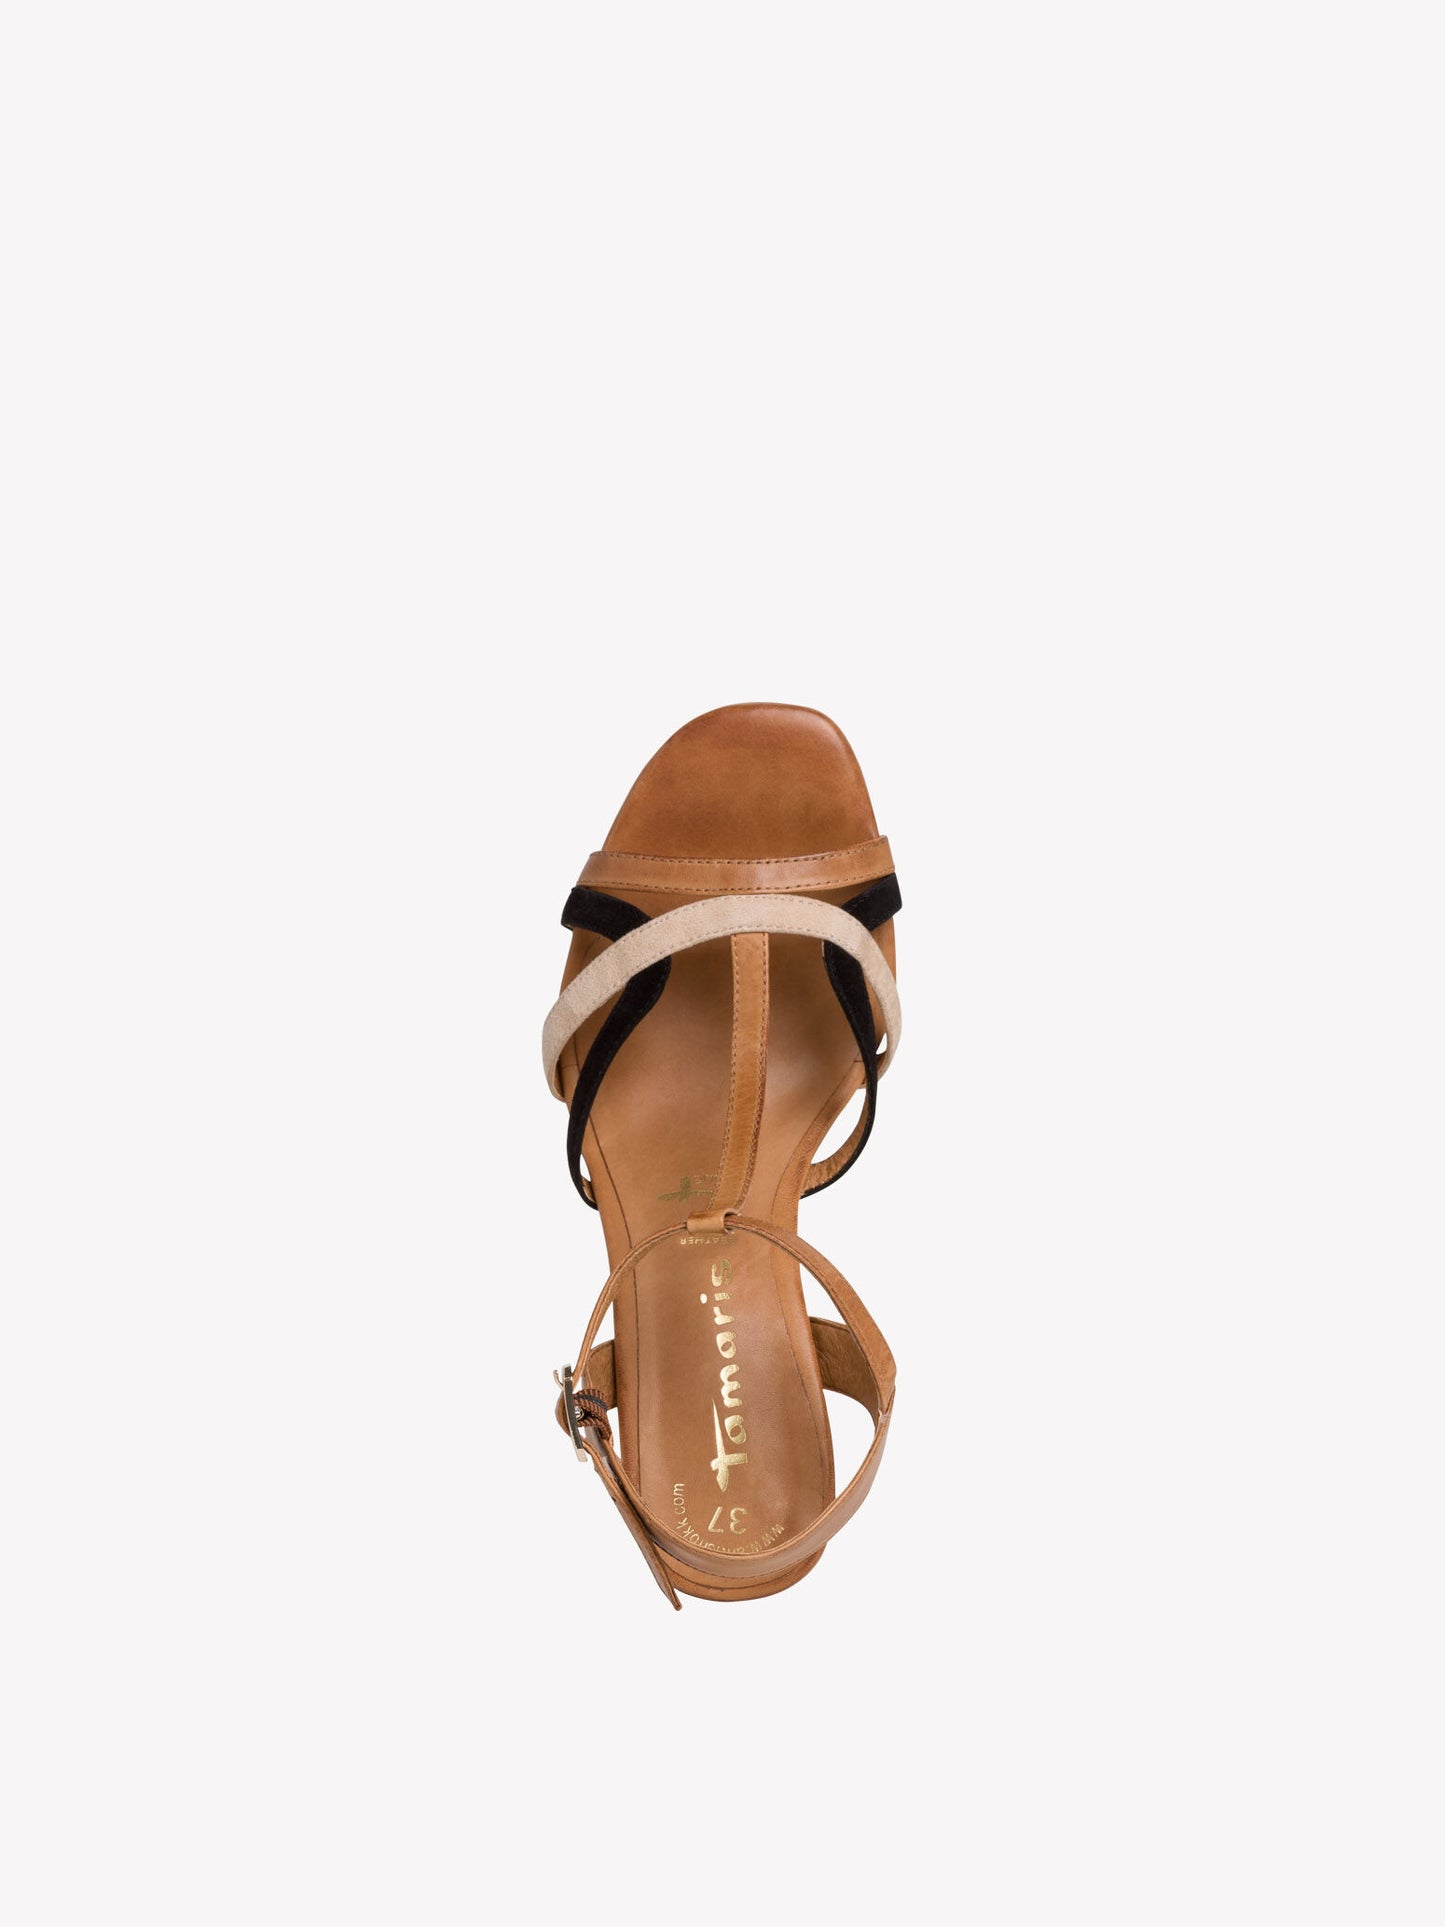 Tamaris Women's 1-28025-24 Heeled Leather Sandals Cognac Brown